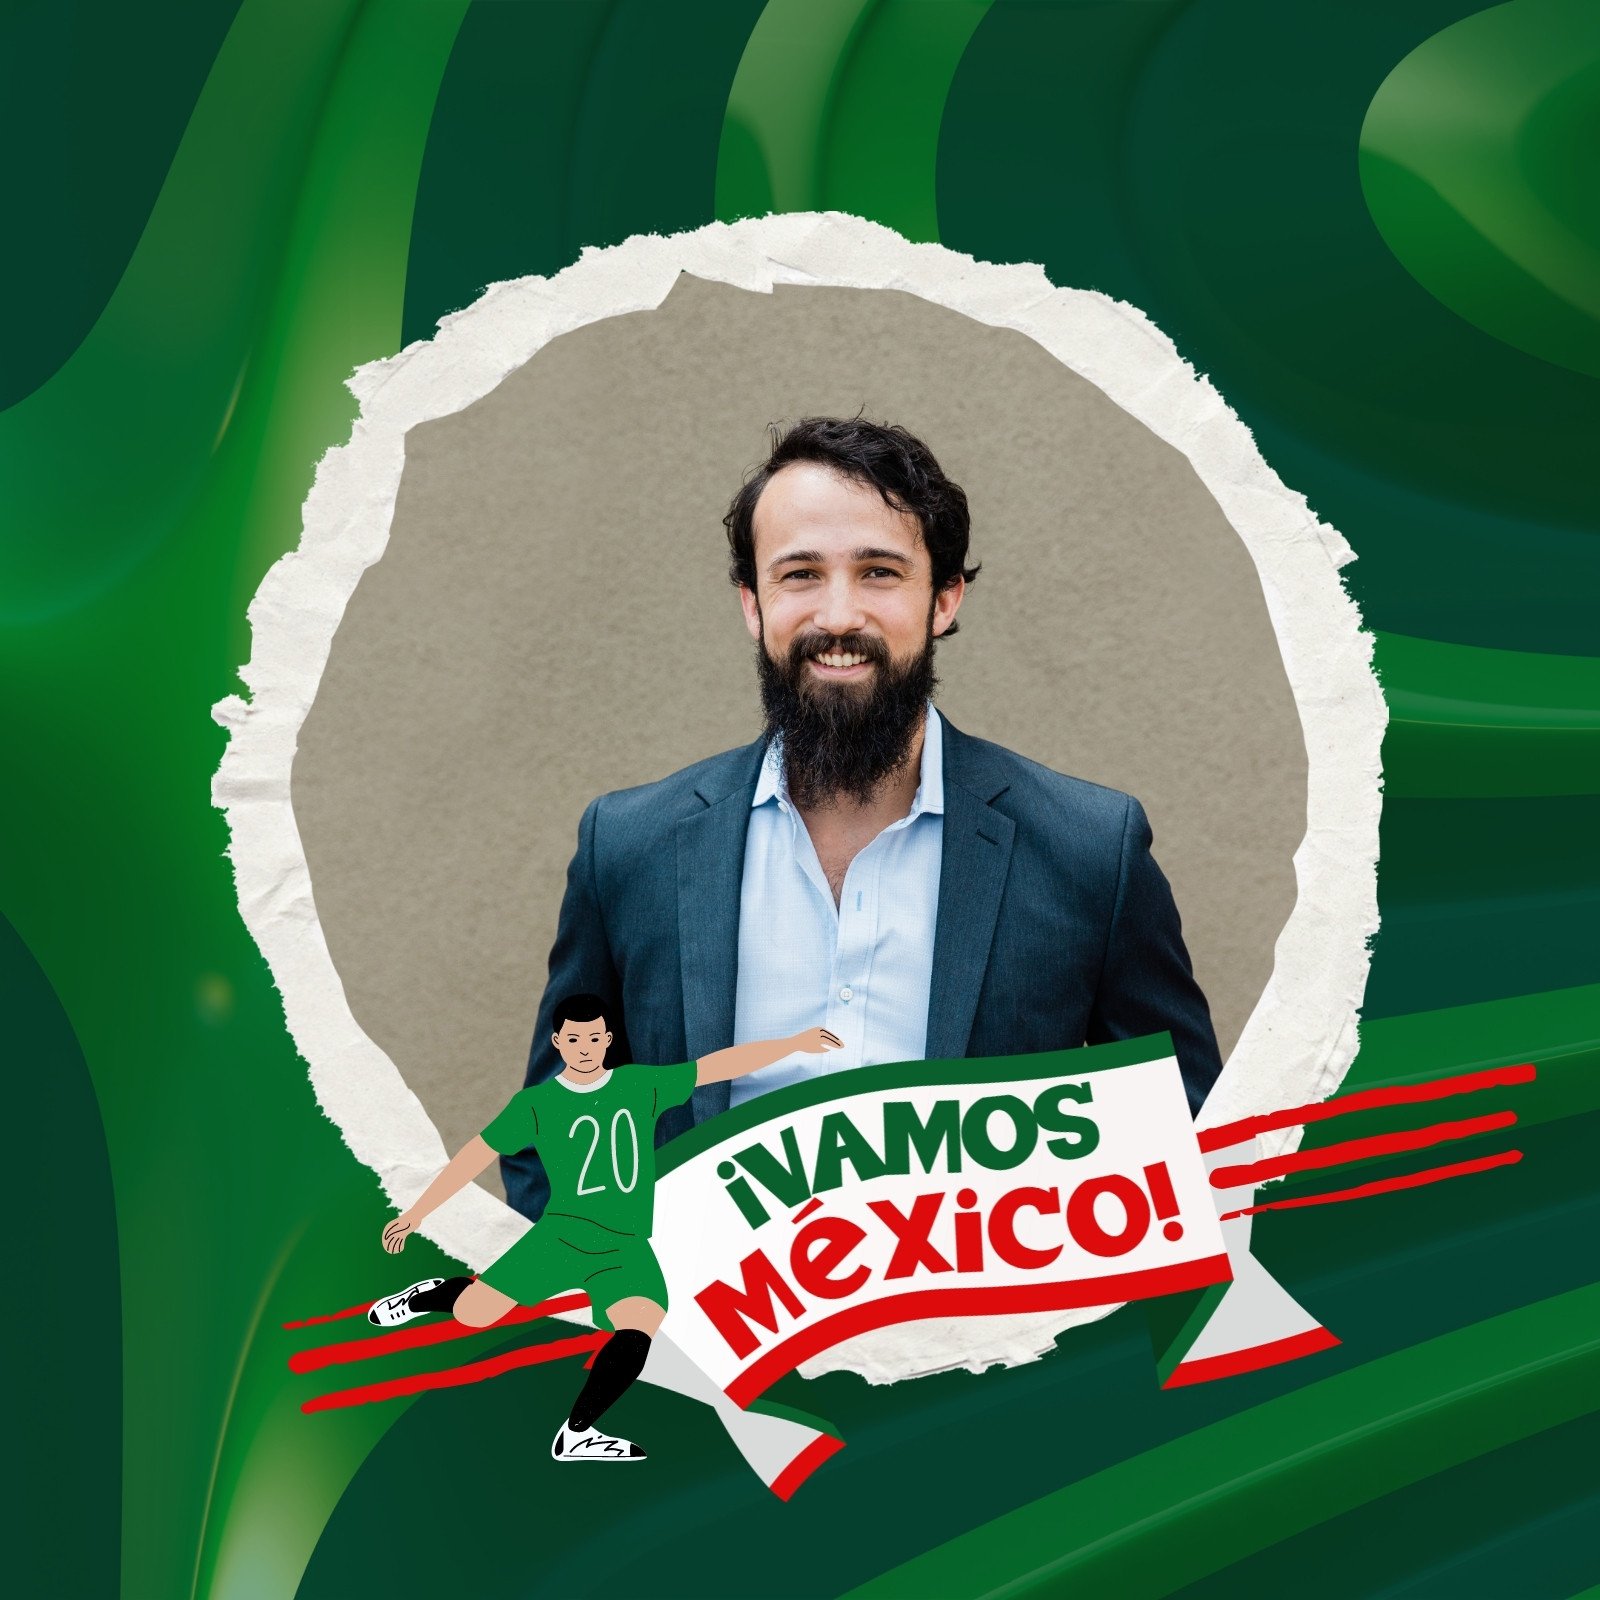 foto de perfil de facebook vamos mexico futbol dinamica verde